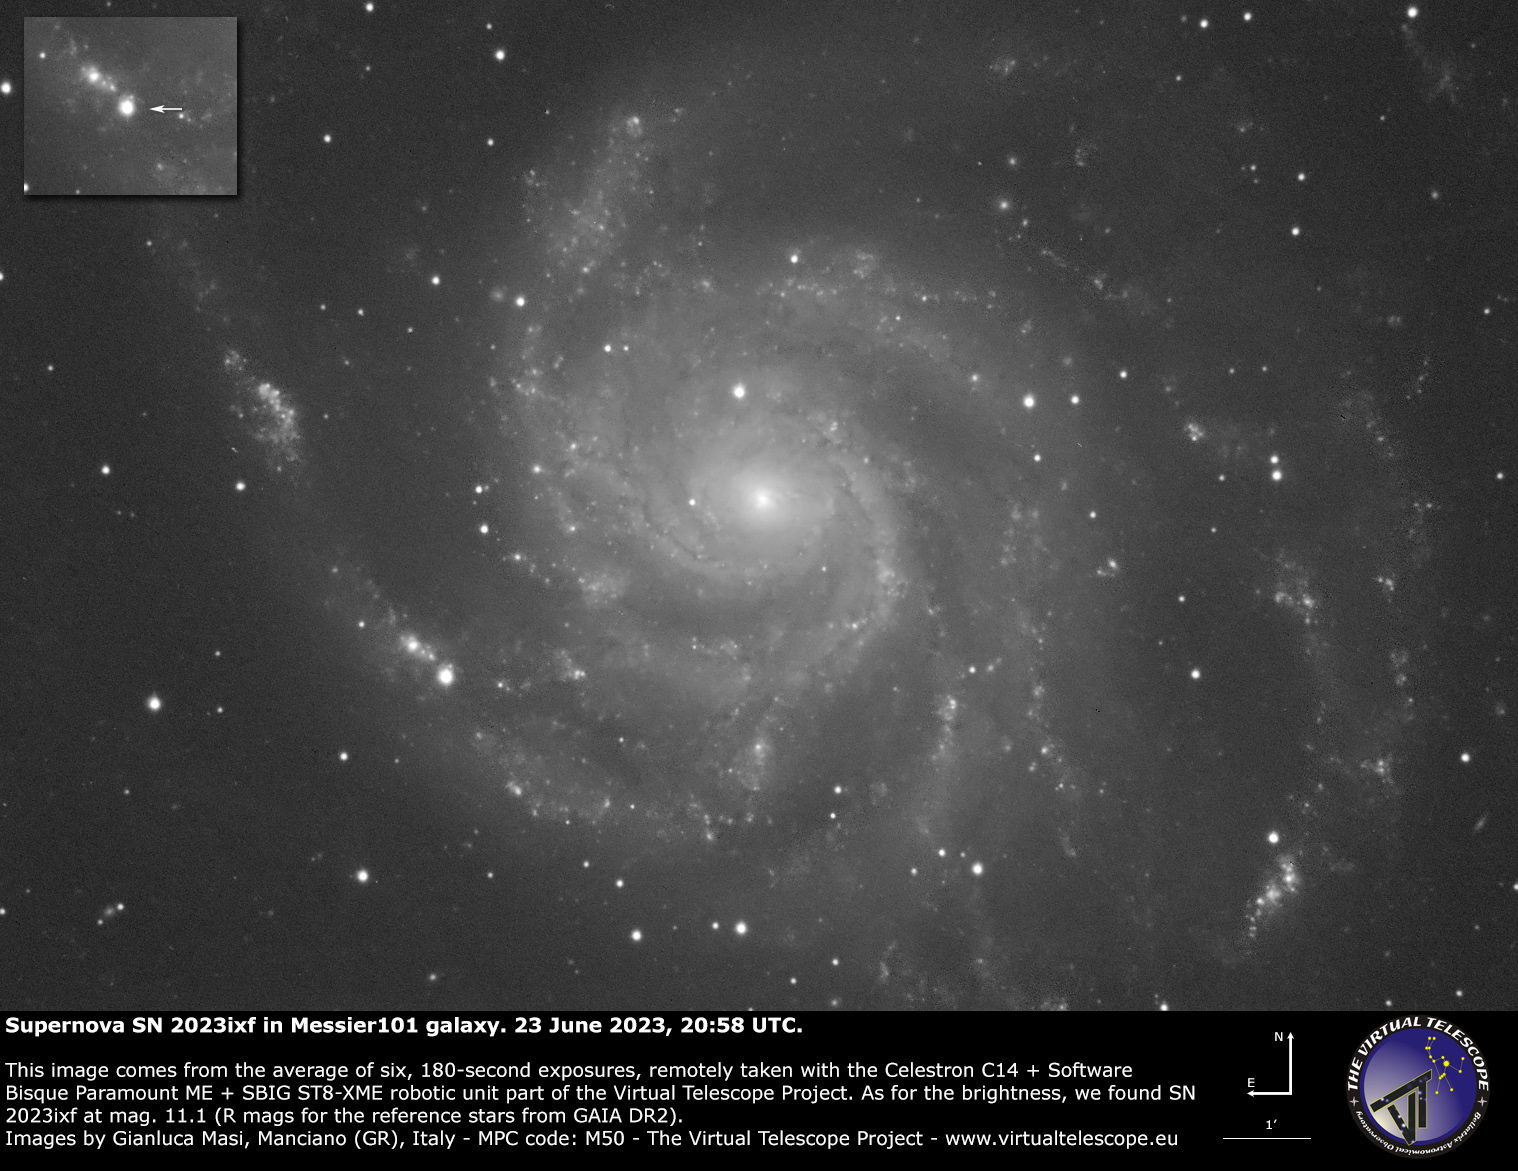 Supernova SN 2023ixf in Messier 101. 23 June 2023.